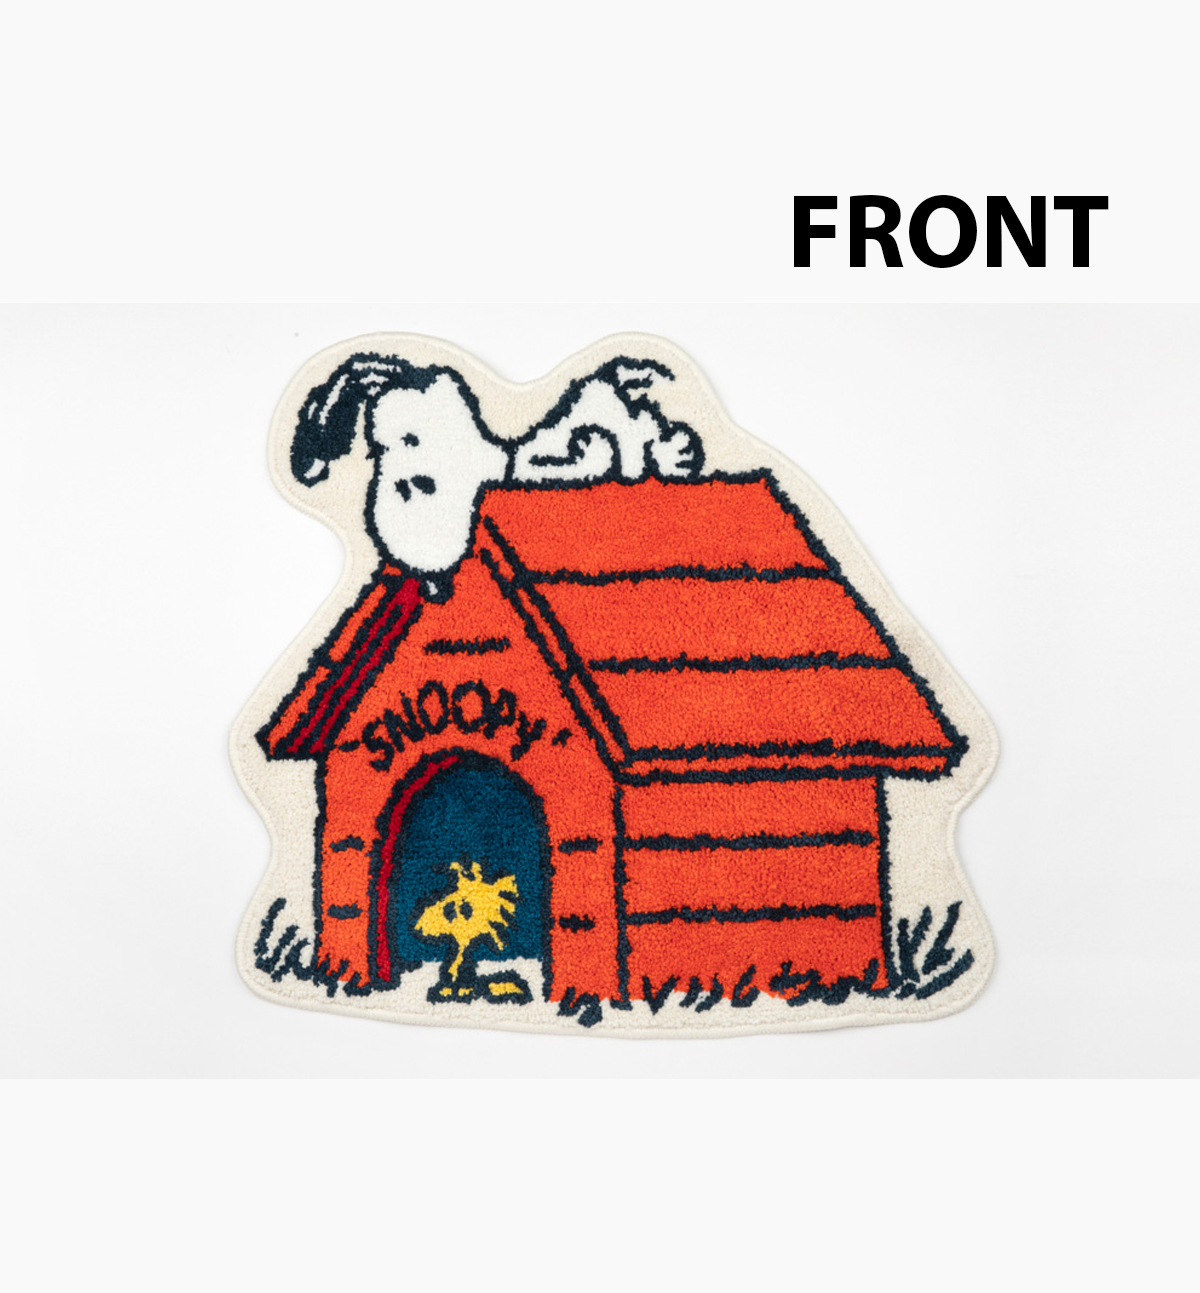 Snoopy House Rug